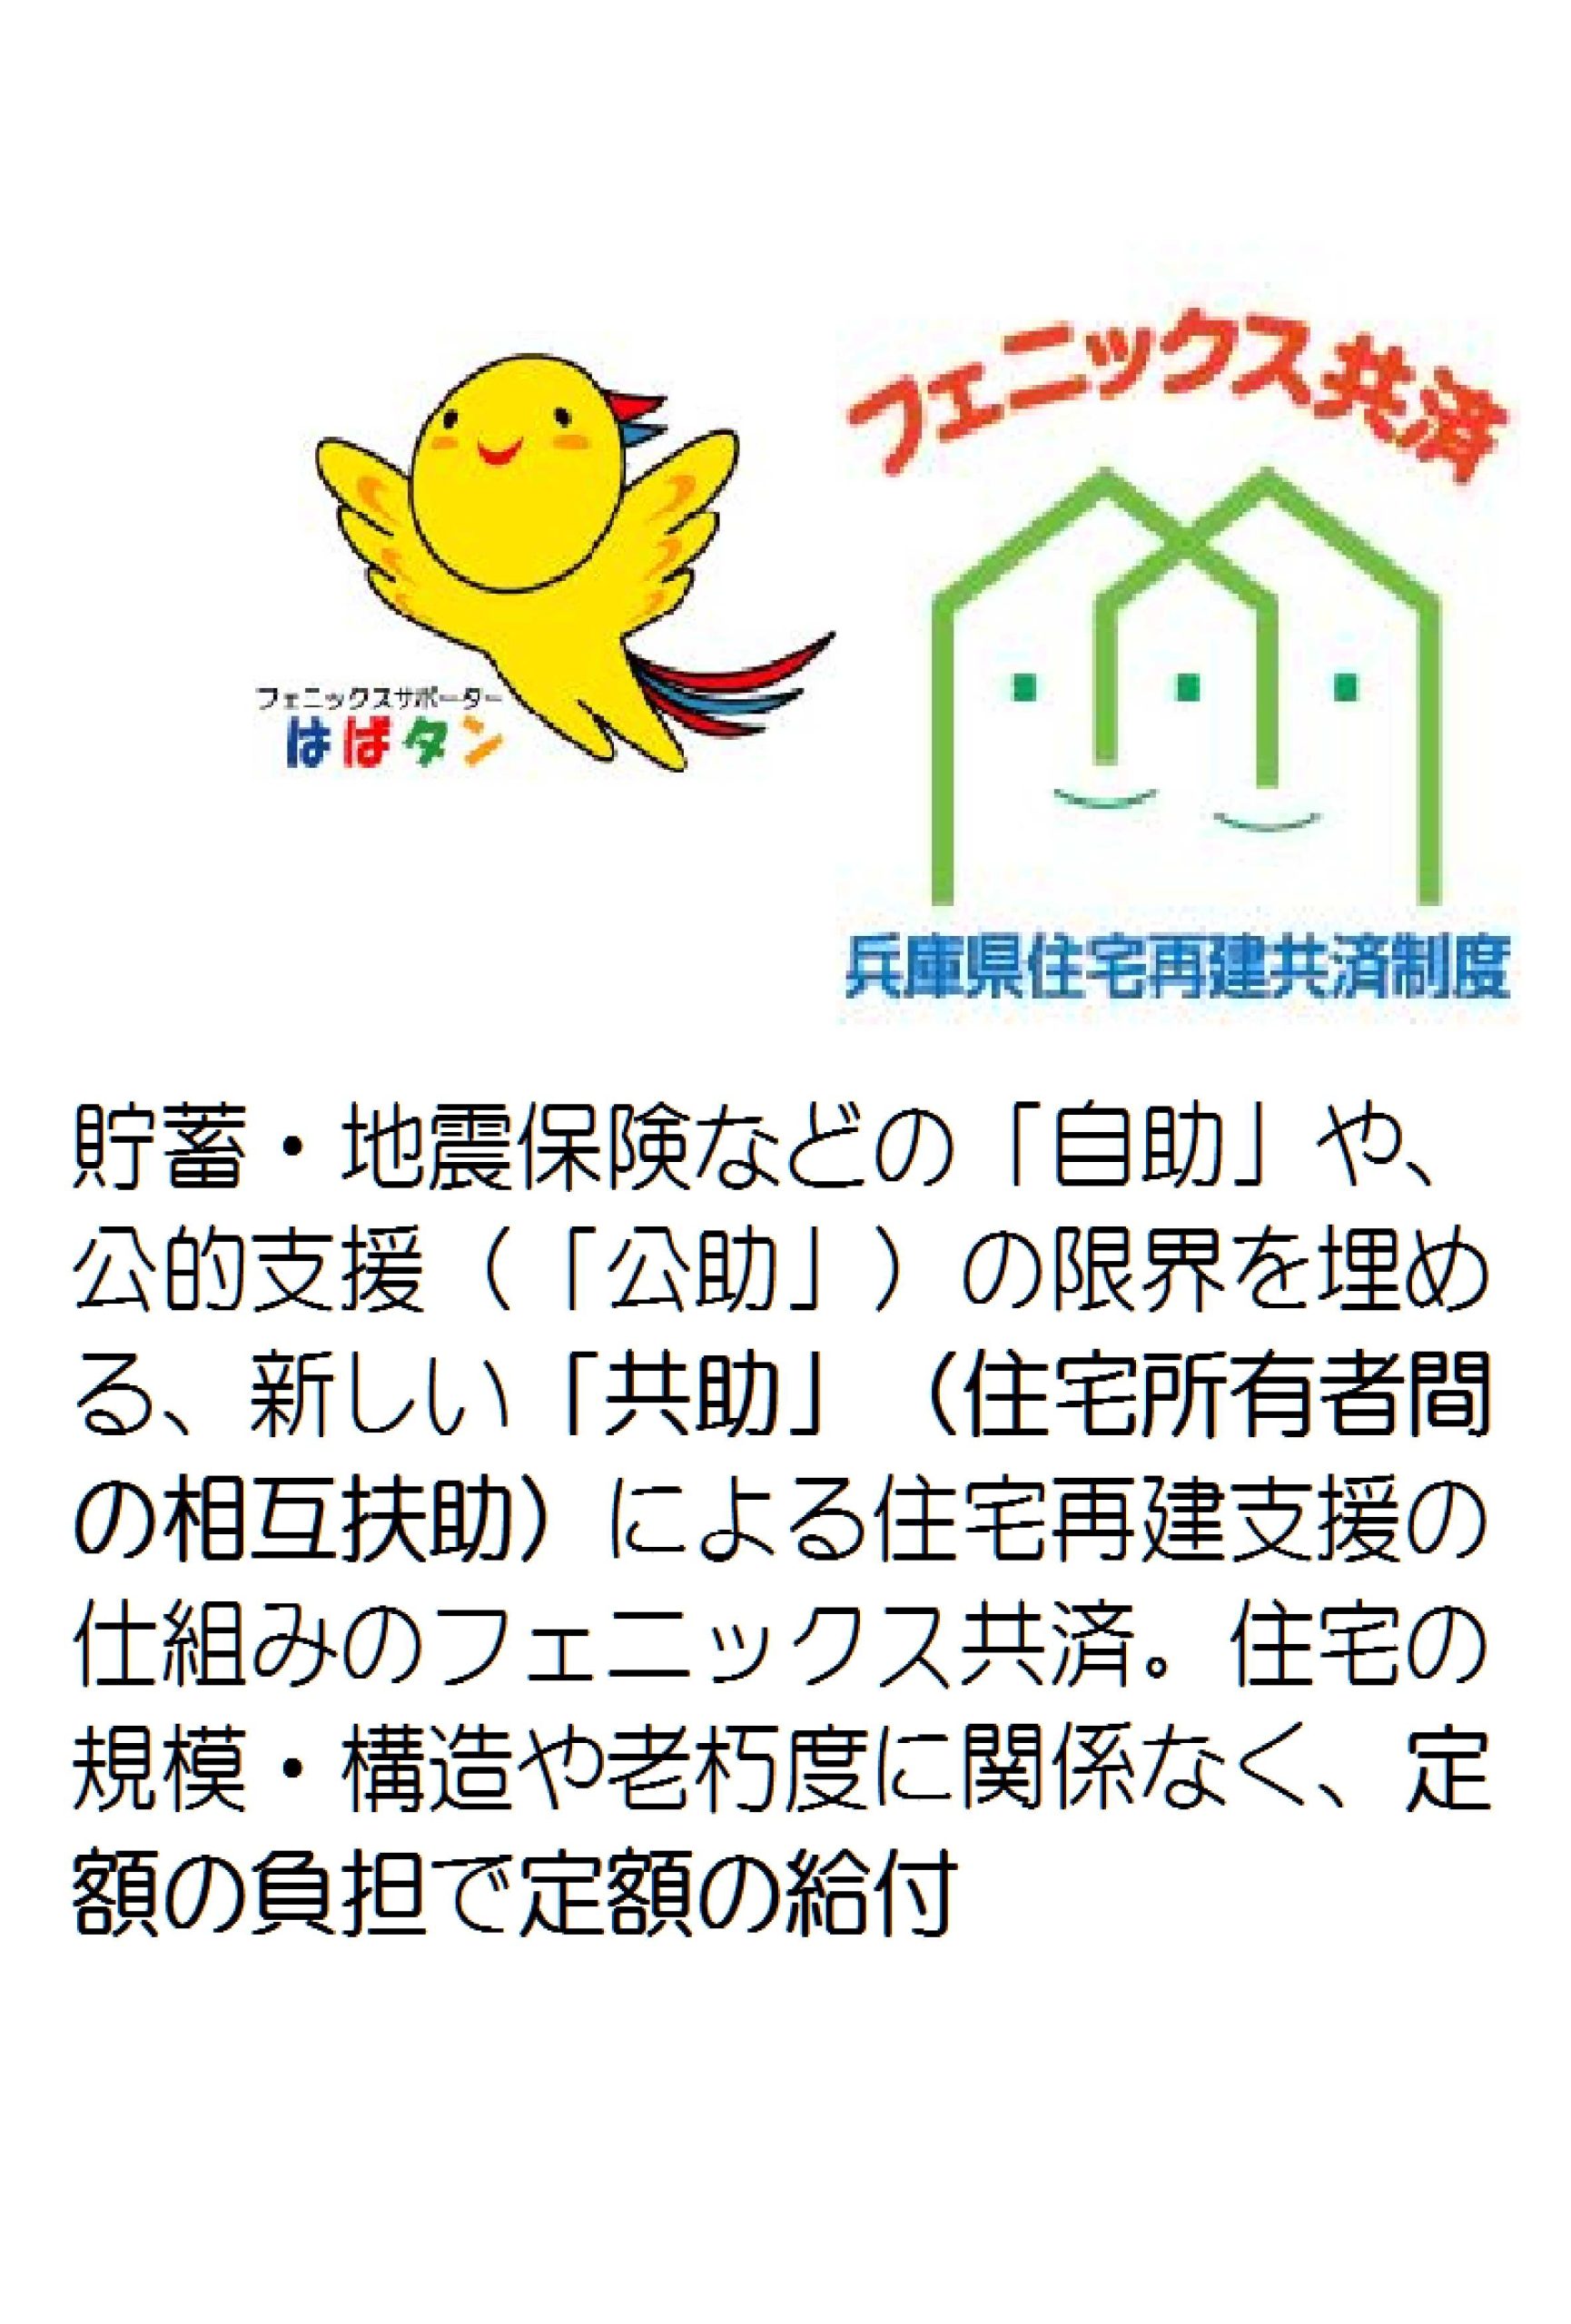 阪神淡路大震災の教訓をもとにしてつくられた独自の住宅再建共済制度「フェニックス共済」